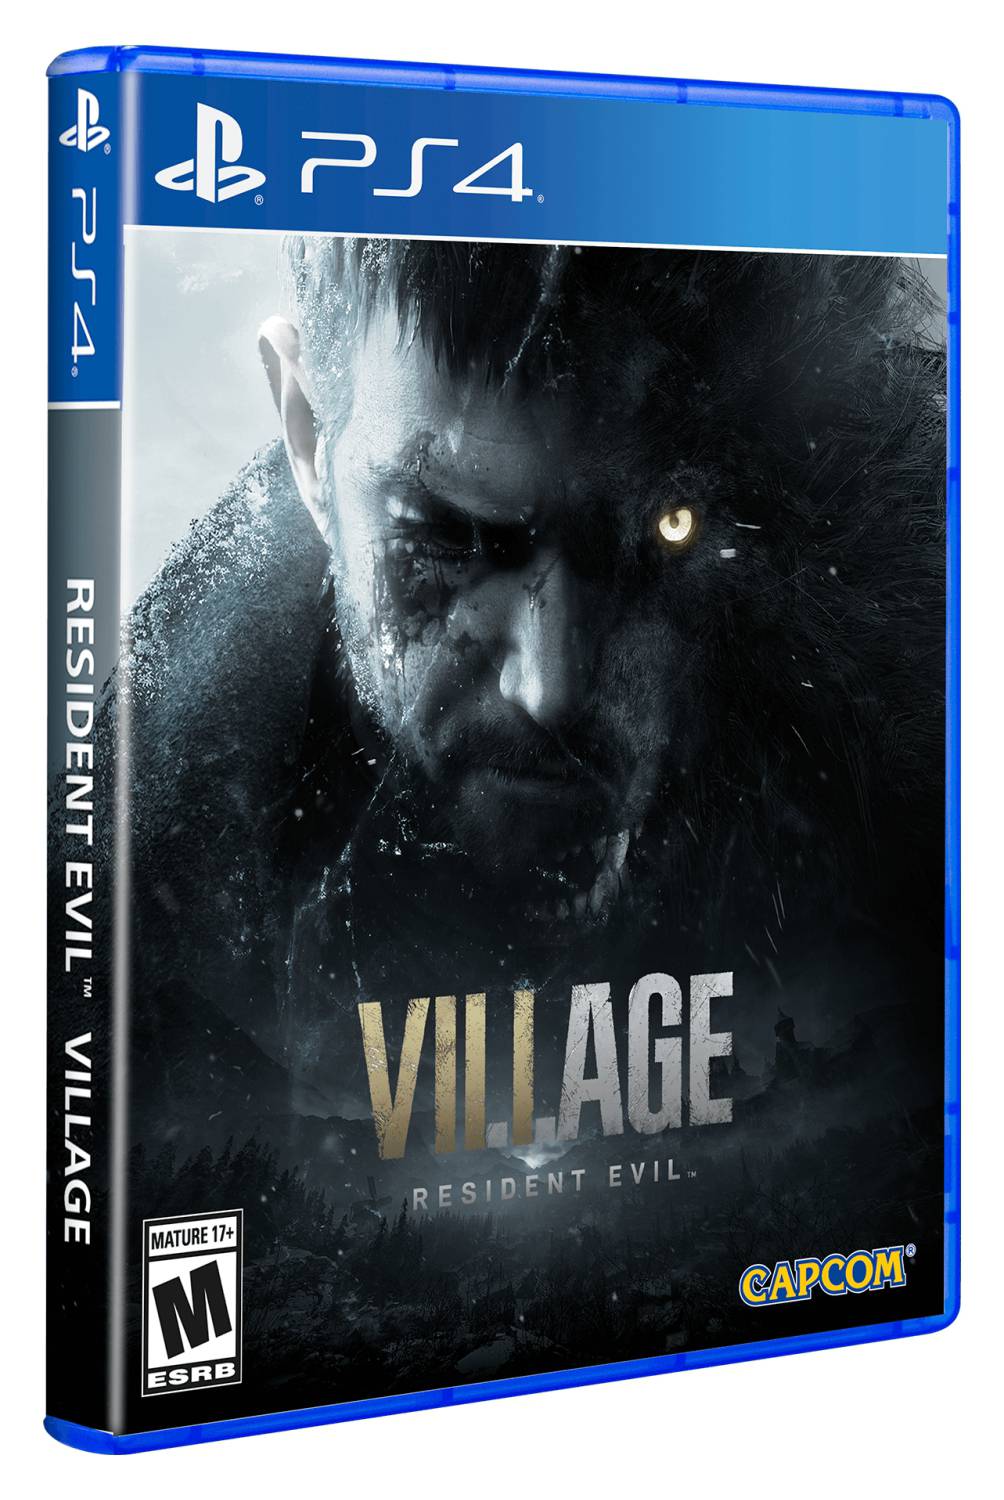 PLAYSTATION - Videojuego Residen Evil Village Video Juego Consola Playstation 4 PS4 Idioma Español Capcom